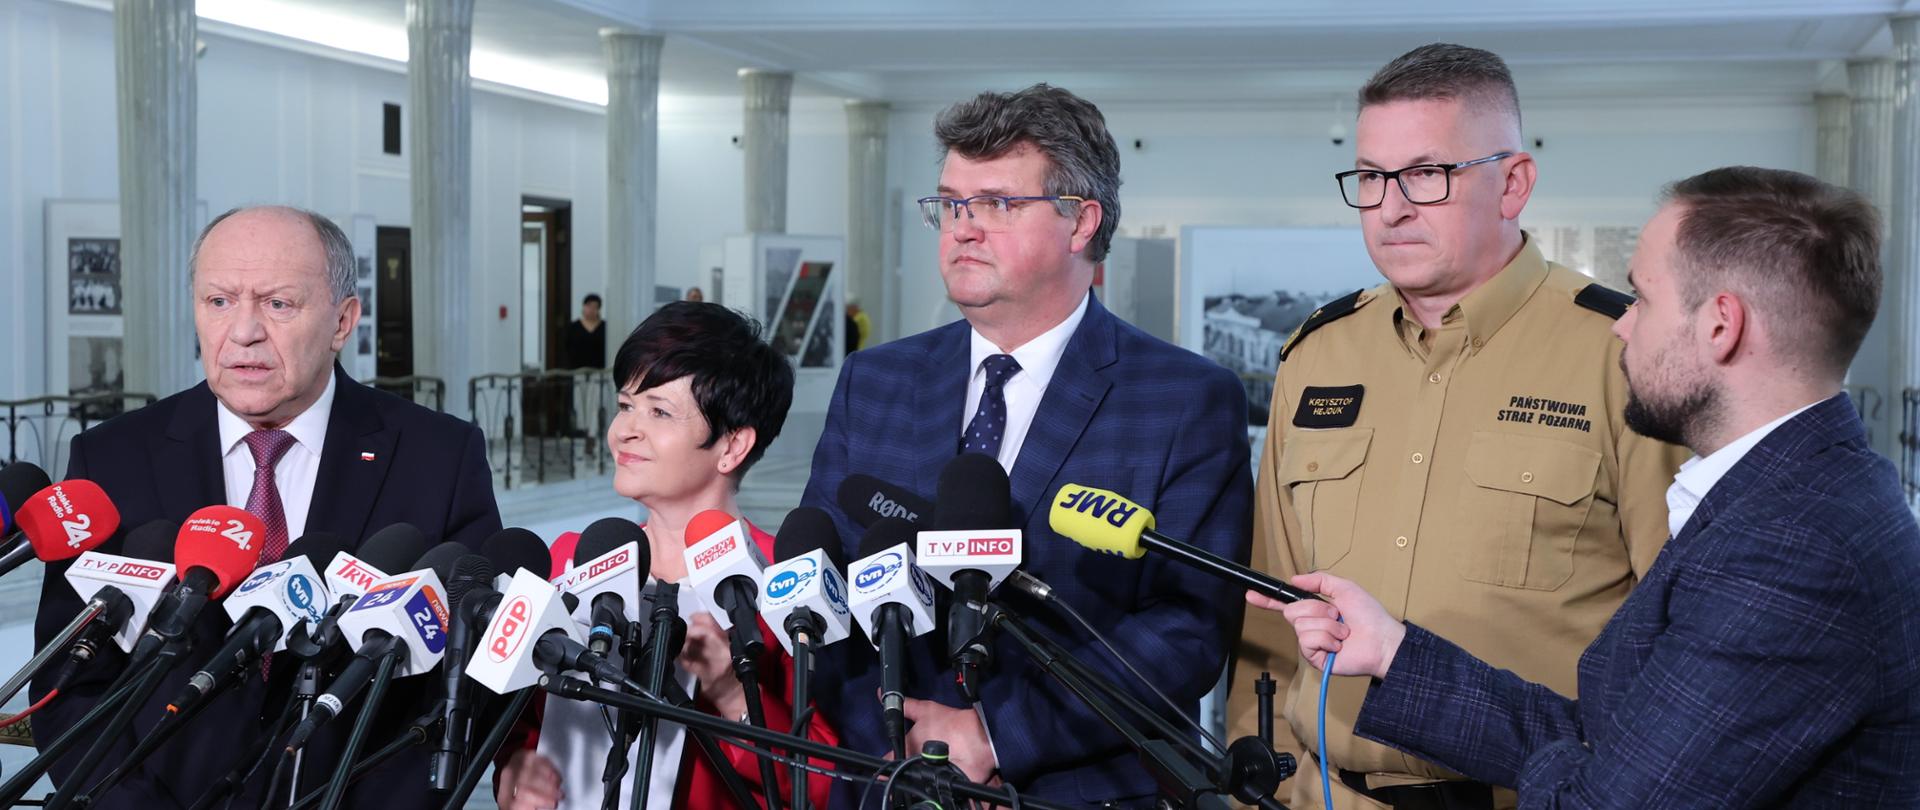 Zdjęcie przedstawia pięć osób podczas briefingu prasowego w gmachu Sejmu RP